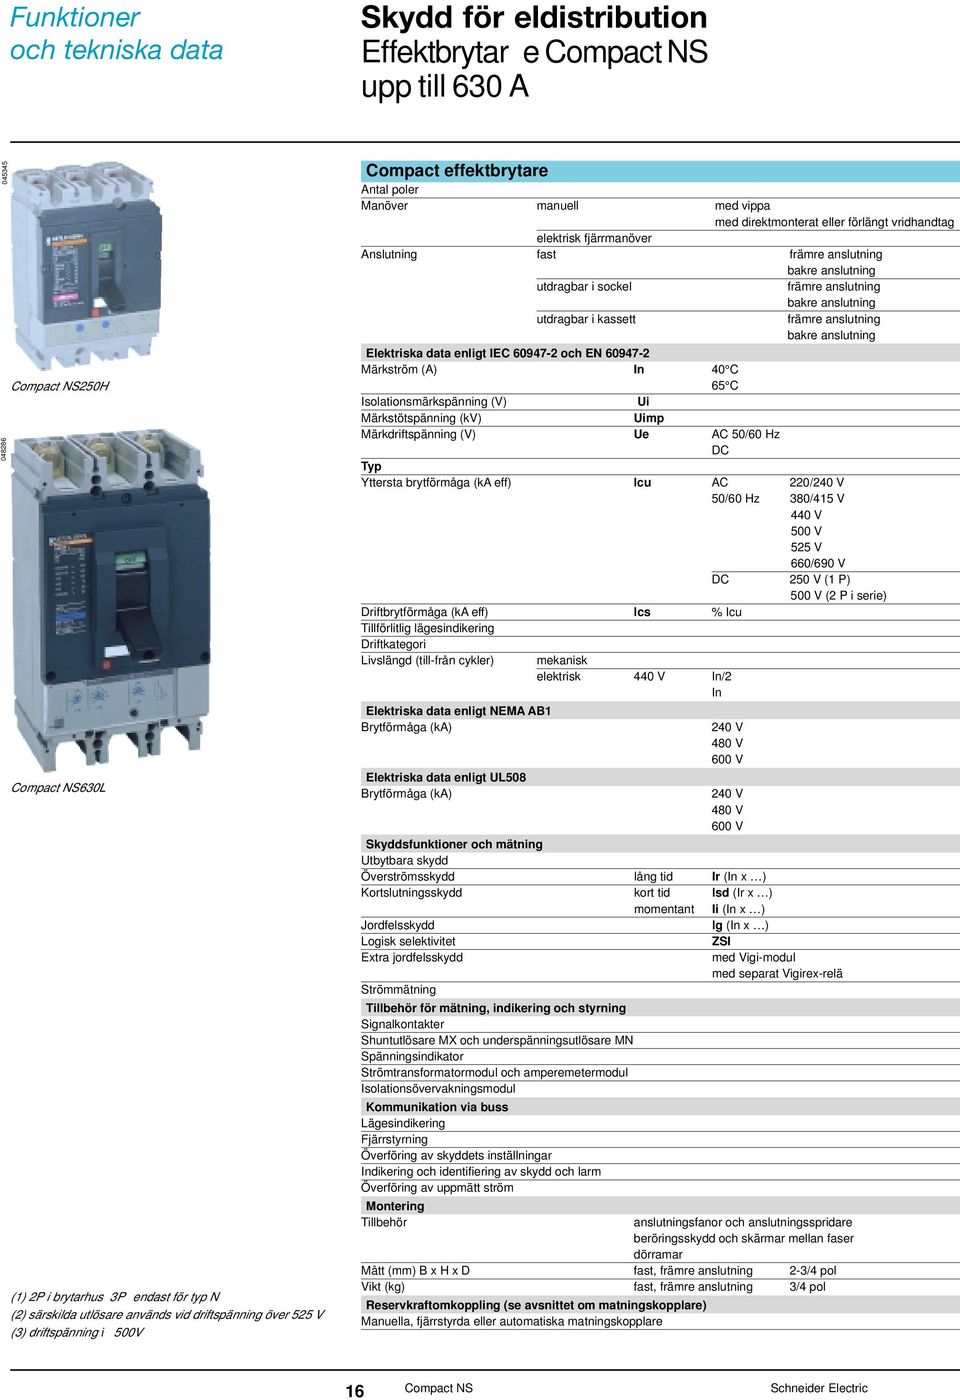 anslutning utdragbar i sokel främre anslutning bakre anslutning utdragbar i kassett främre anslutning bakre anslutning Elektriska data enligt IEC 60947-2 oh EN 60947-2 Märkström (A) In 40 C 65 C